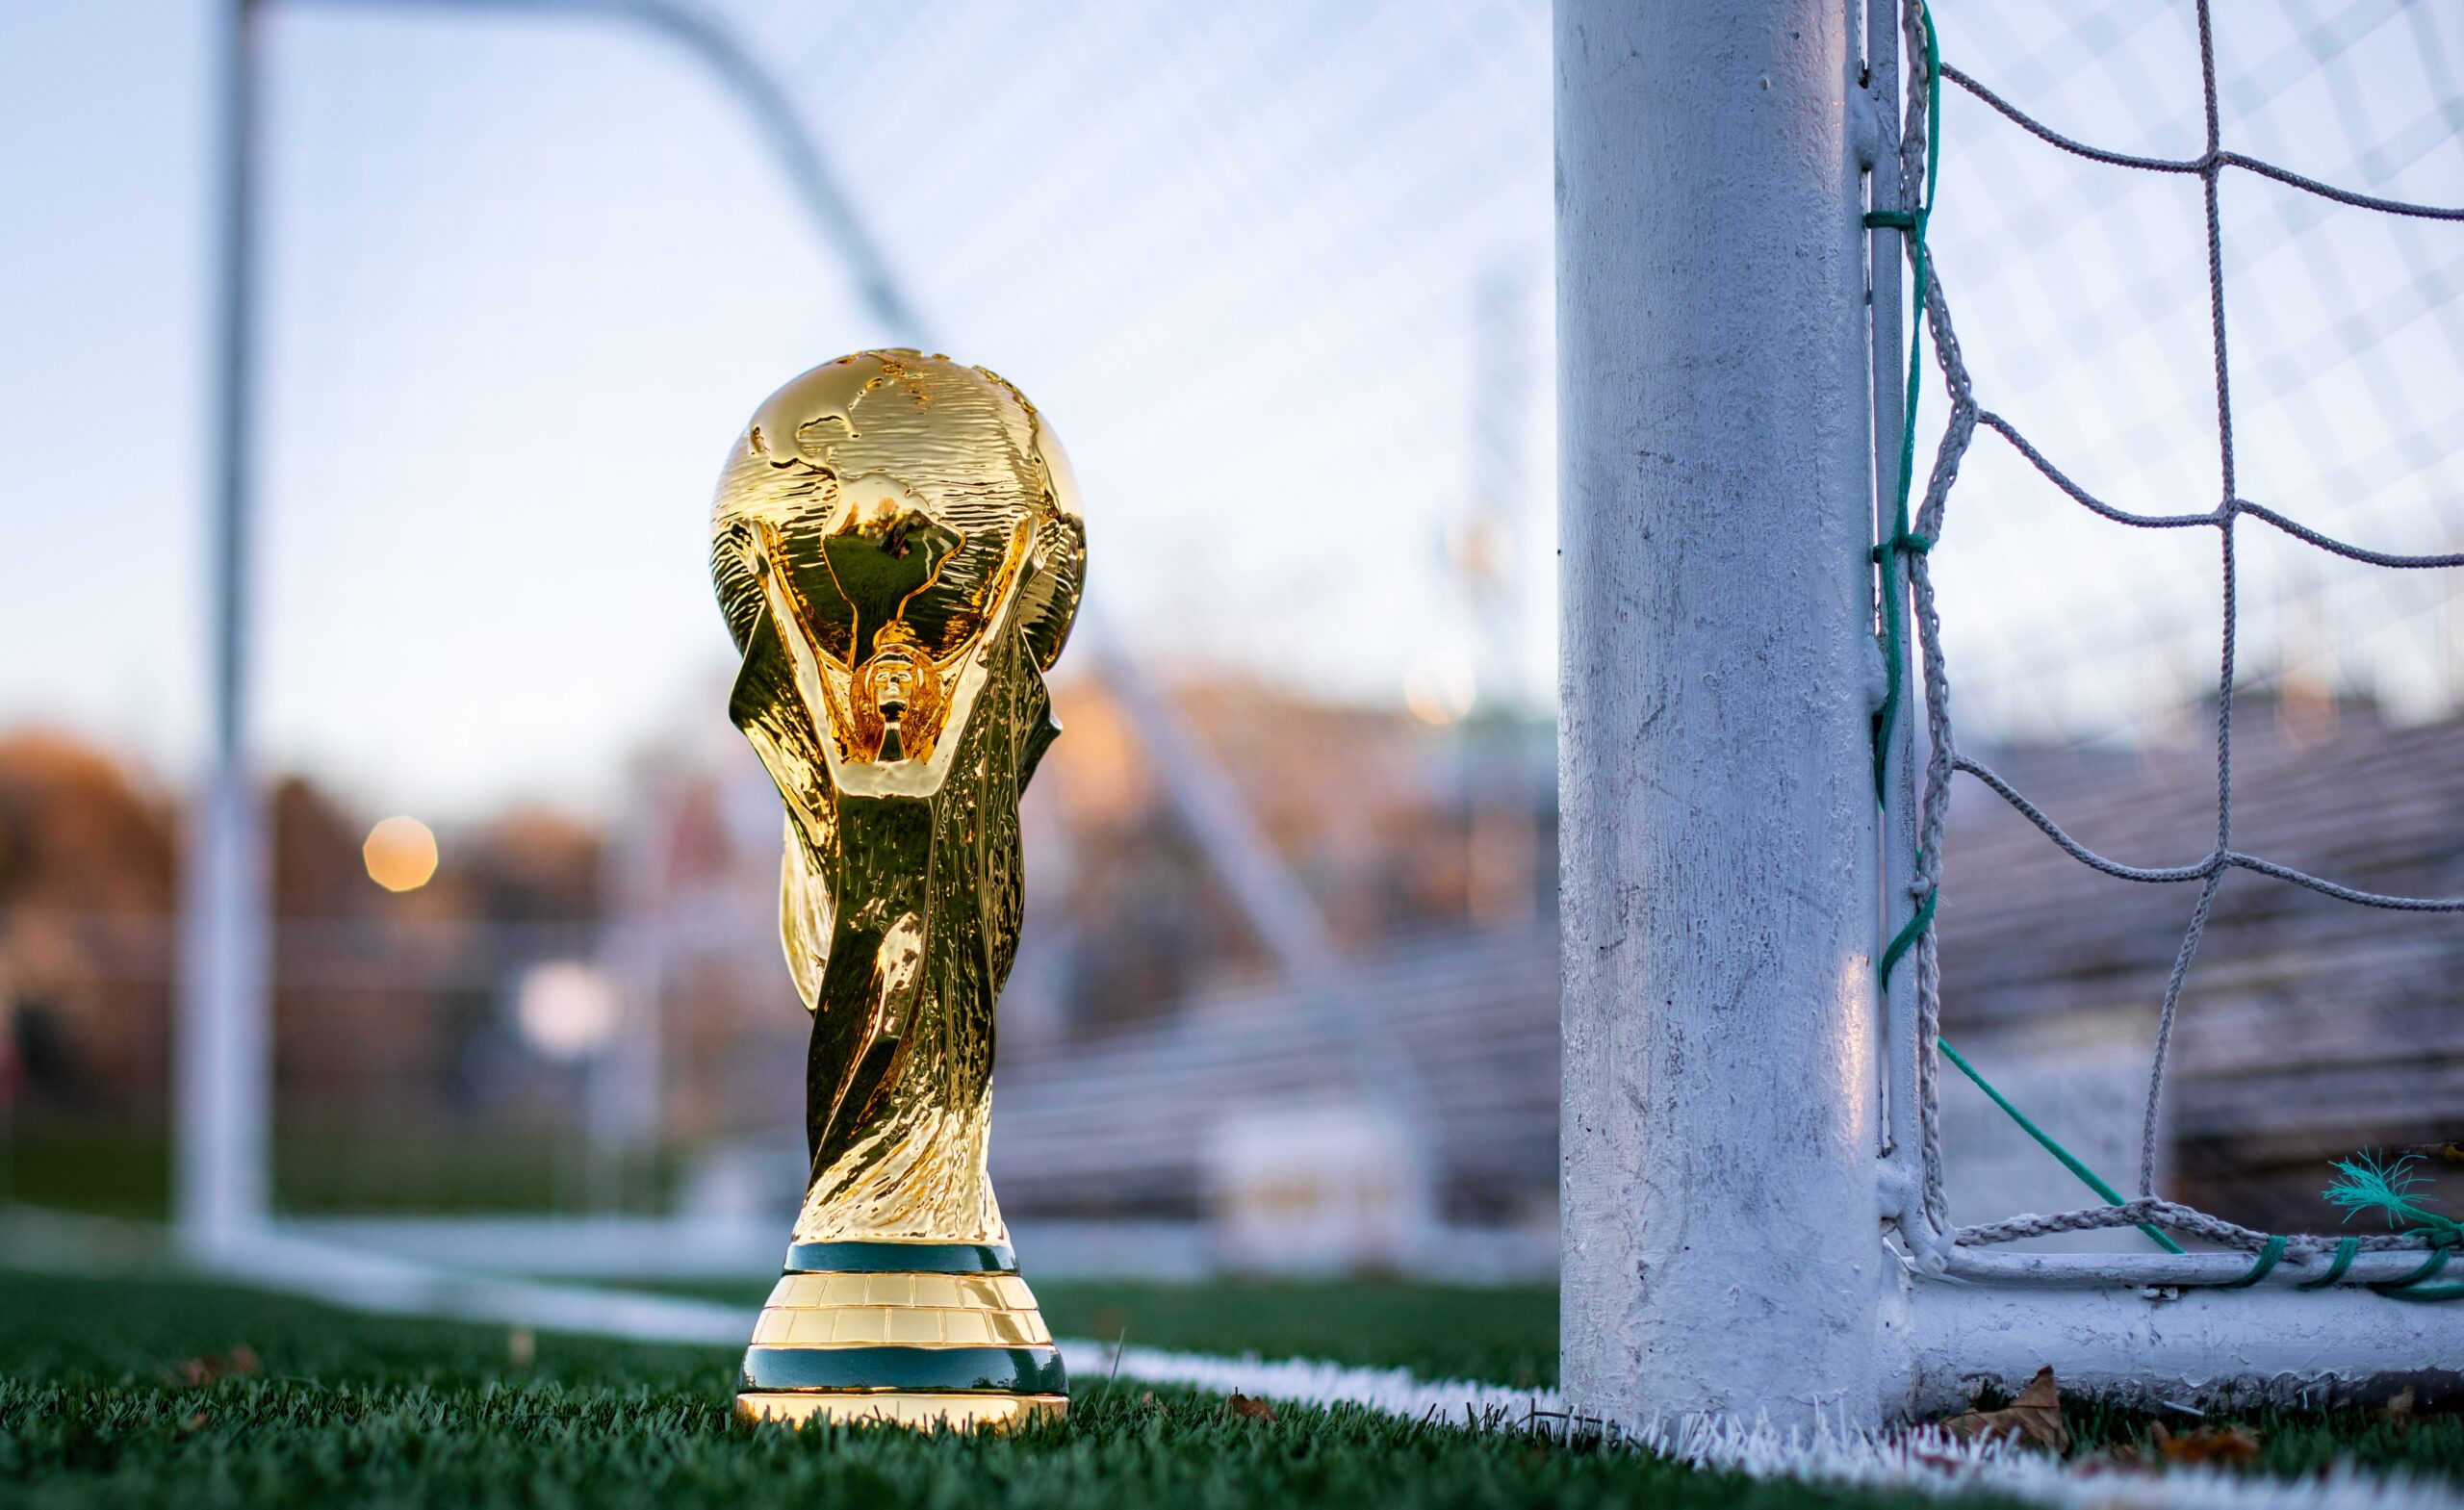 Desde a 1ª Copa do Mundo disputada em 1930, muitas finais de Copa do Mundo se repetiram. Confira qual é a final mais comum da Copa do Mundo.